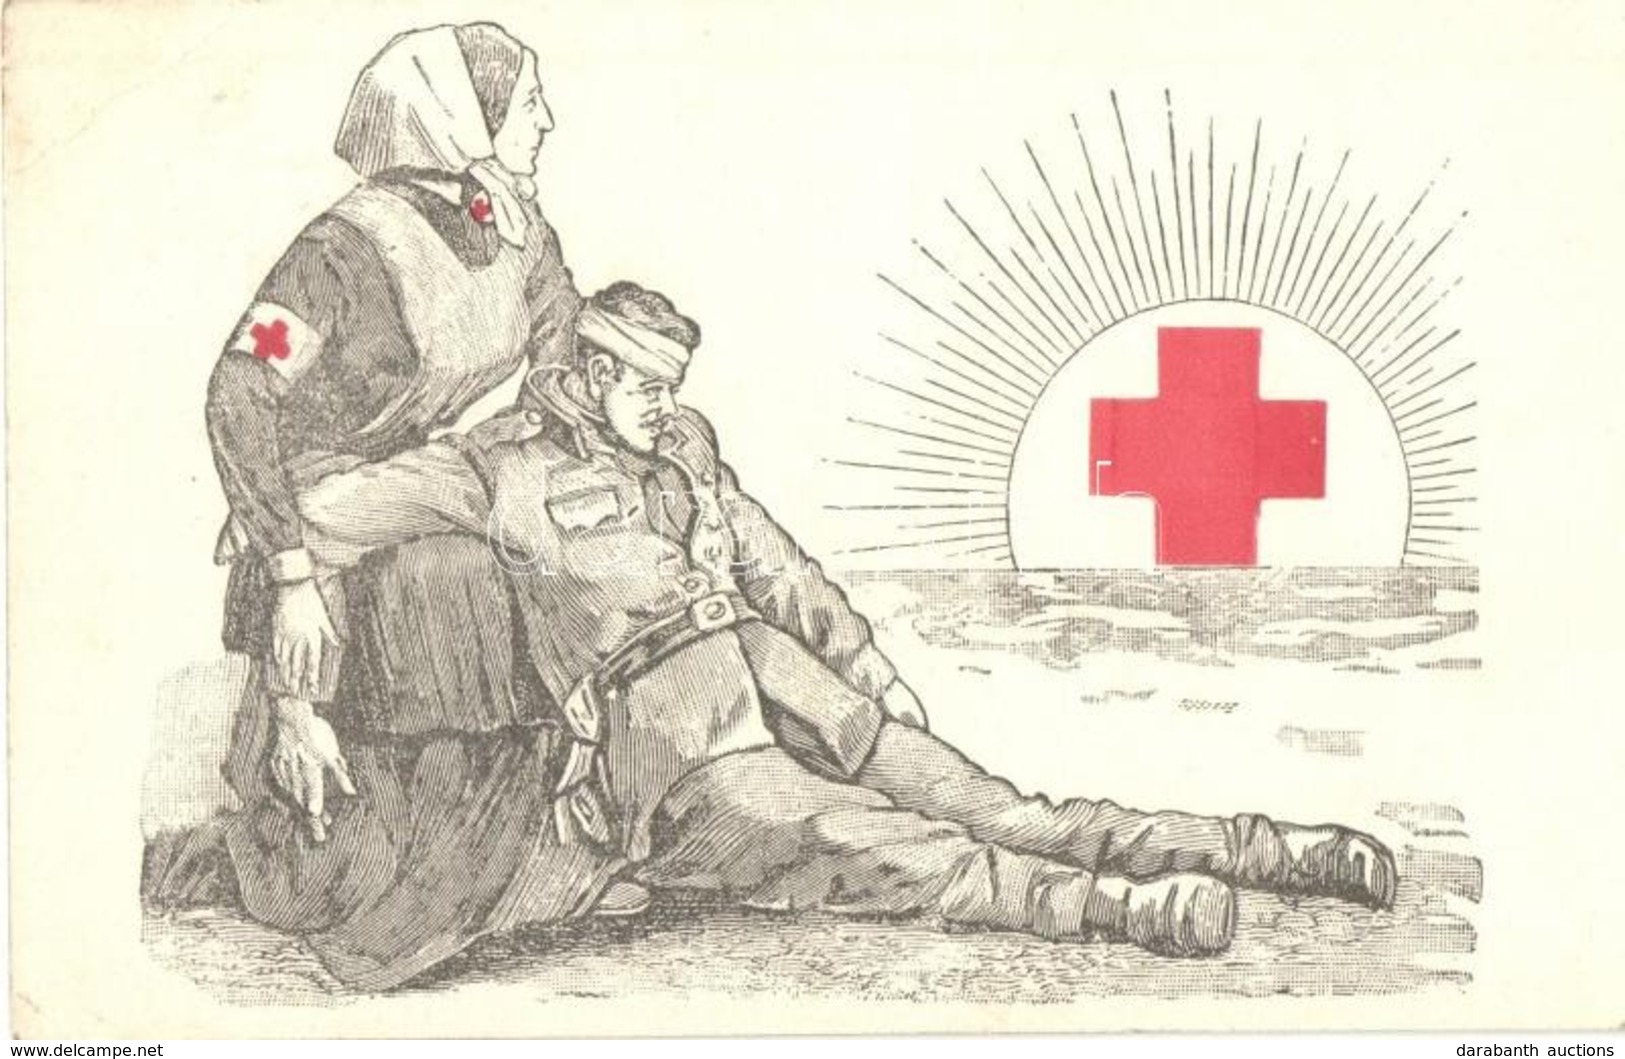 T2/T3 1915 A Vörös Kereszt Egyesület Segélylapja / WWI K.u.K. Red Cross Military Charity Propaganda Card  (EK) - Sin Clasificación